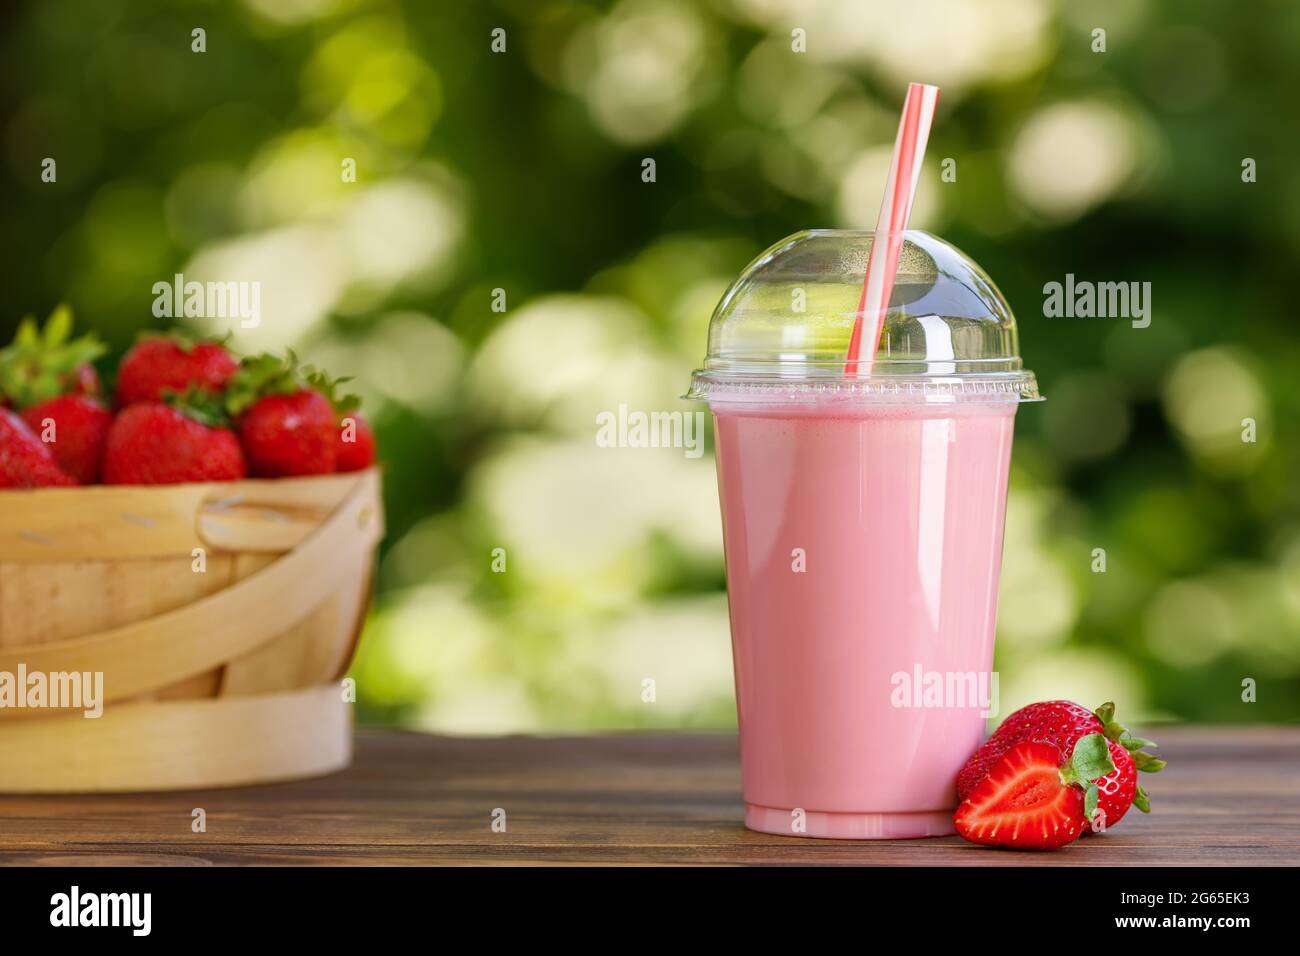 https://c8.alamy.com/comp/2G65EK3/strawberry-smoothie-in-disposable-plastic-glass-on-wooden-table-2G65EK3.jpg